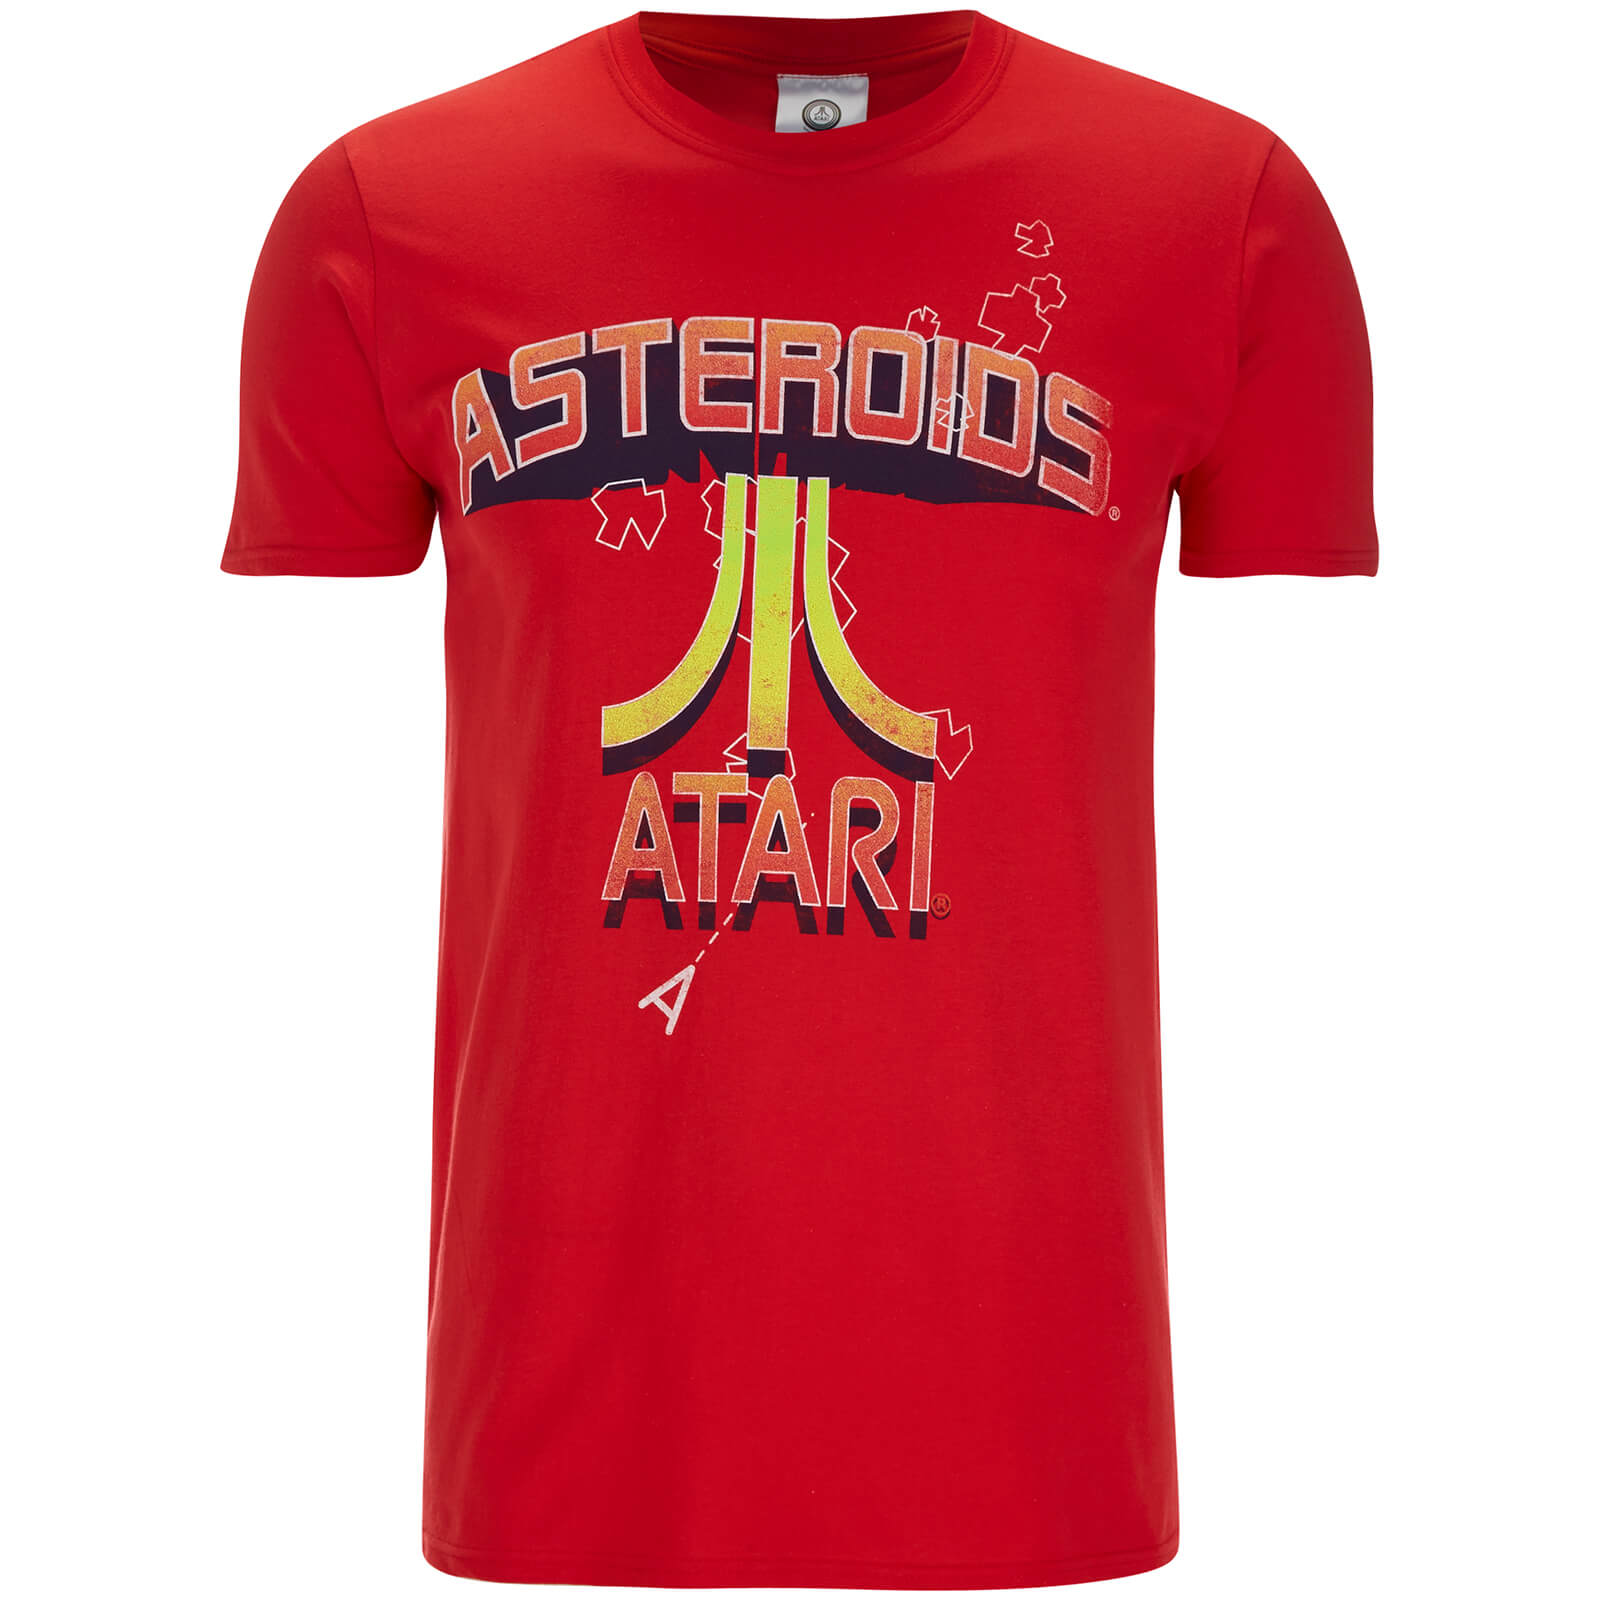 Atari Men's Asteroids Atari Vintage Logo T-Shirt - Red - S